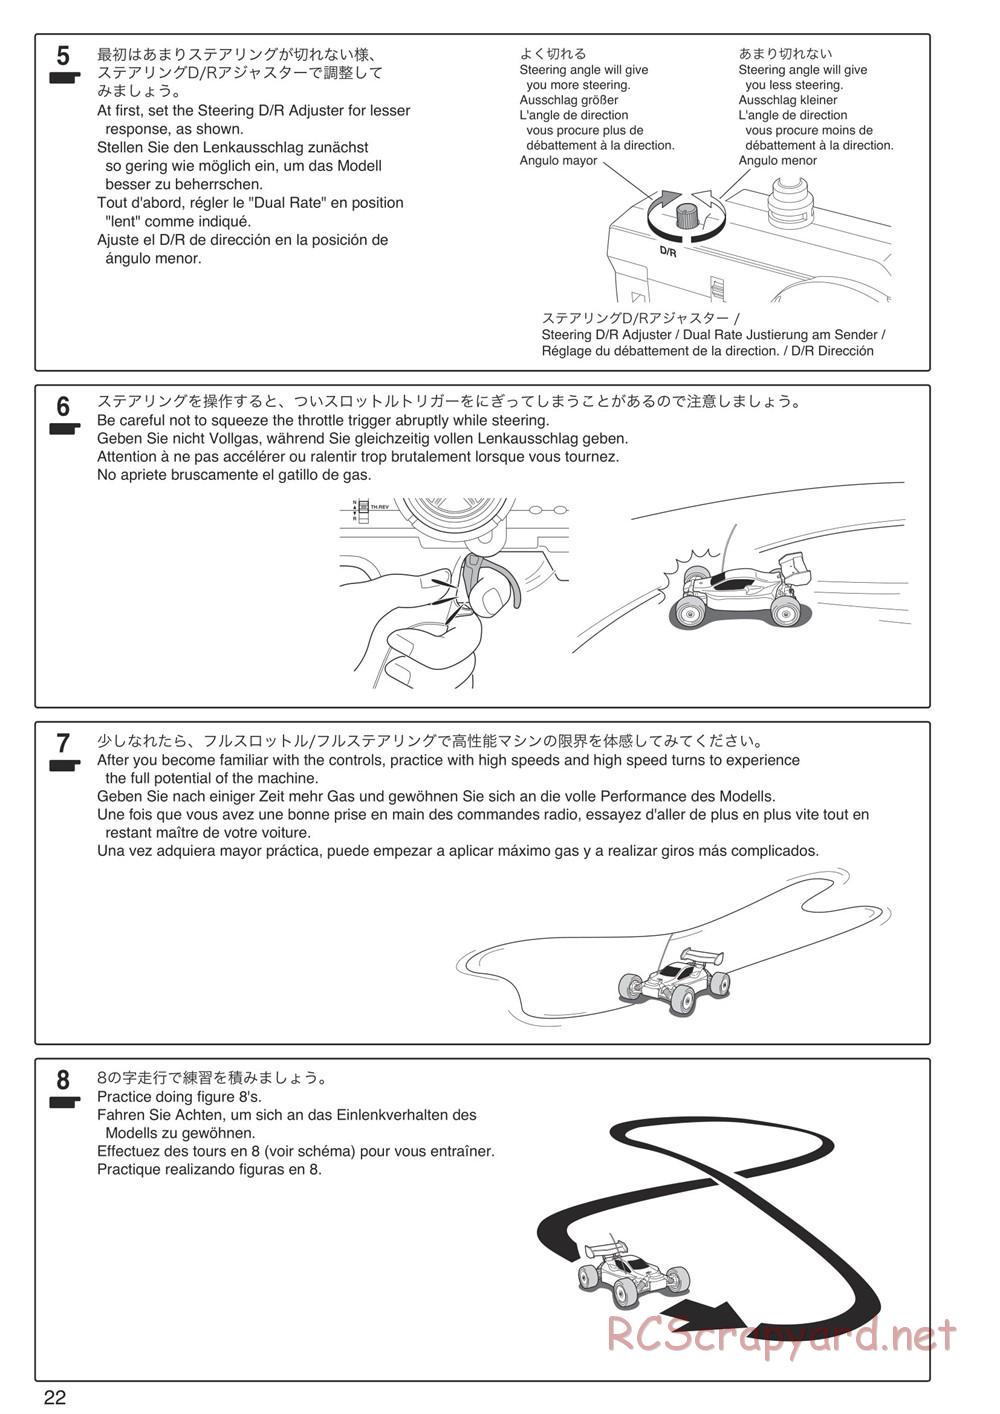 Kyosho - DBX-VE - Manual - Page 22